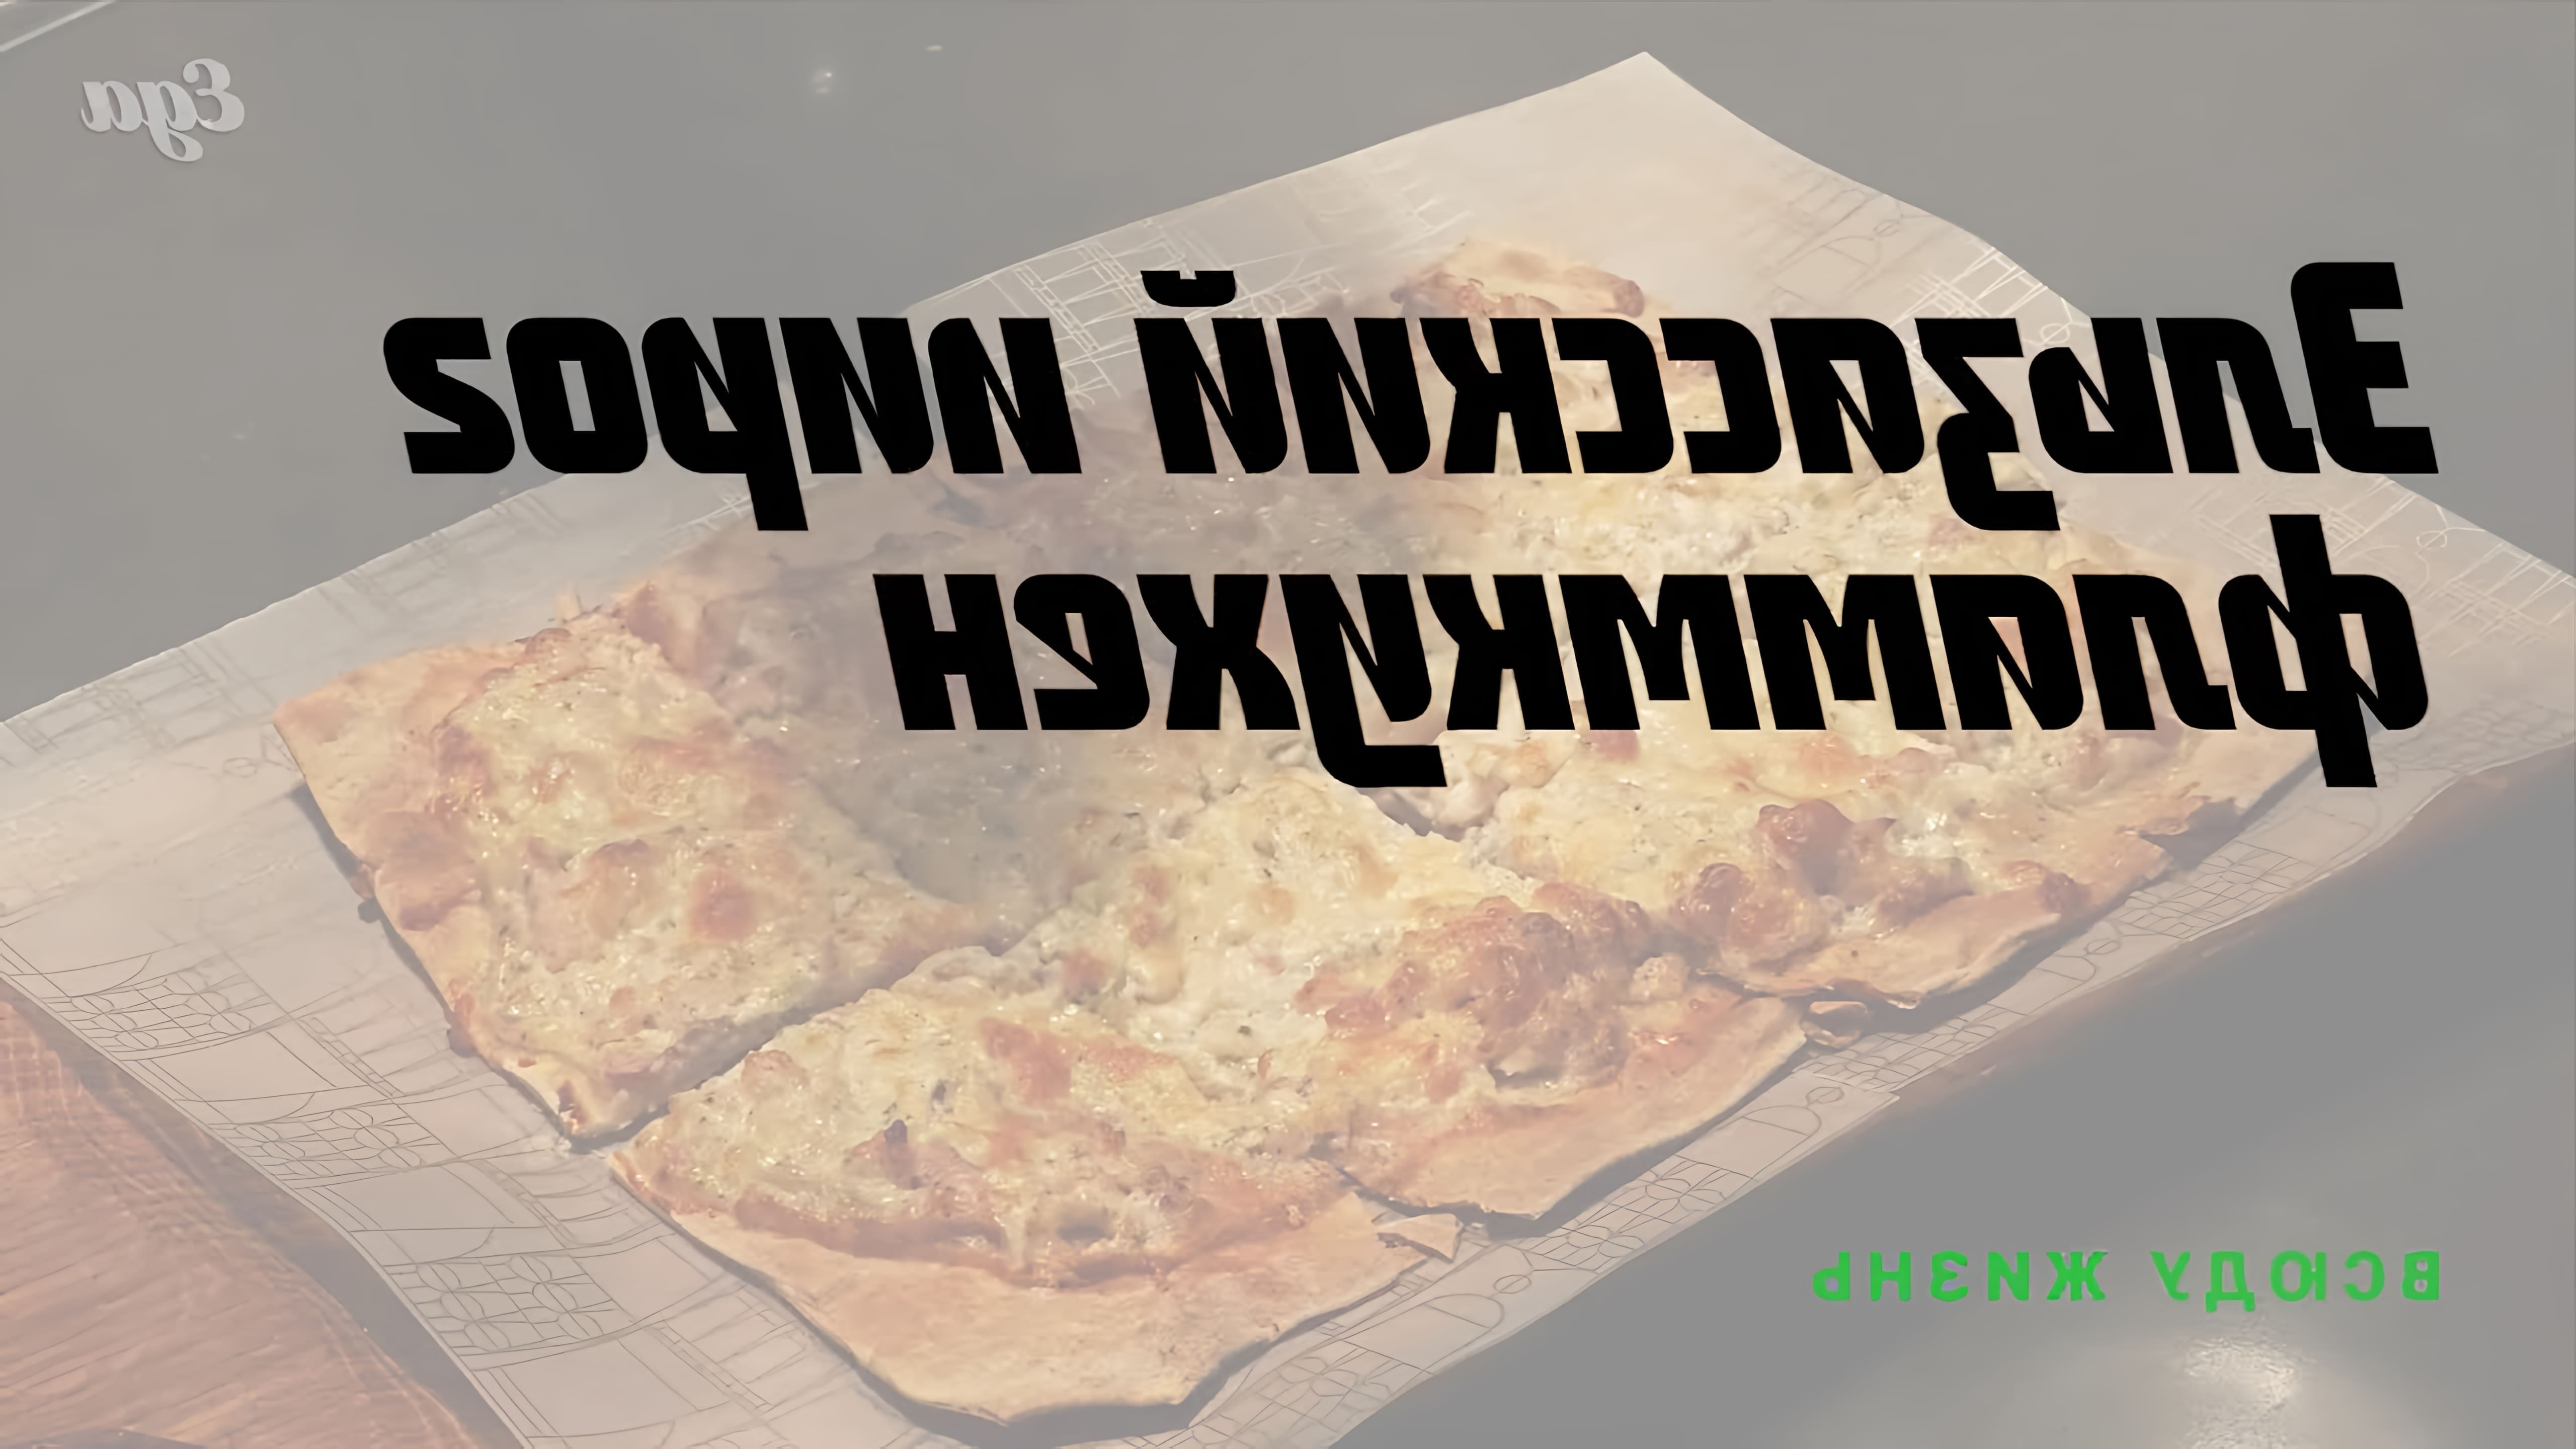 В отличие от пиццы, в снаряжении фламмкухена нет железных правил: тут может проскользнуть и что-то... 